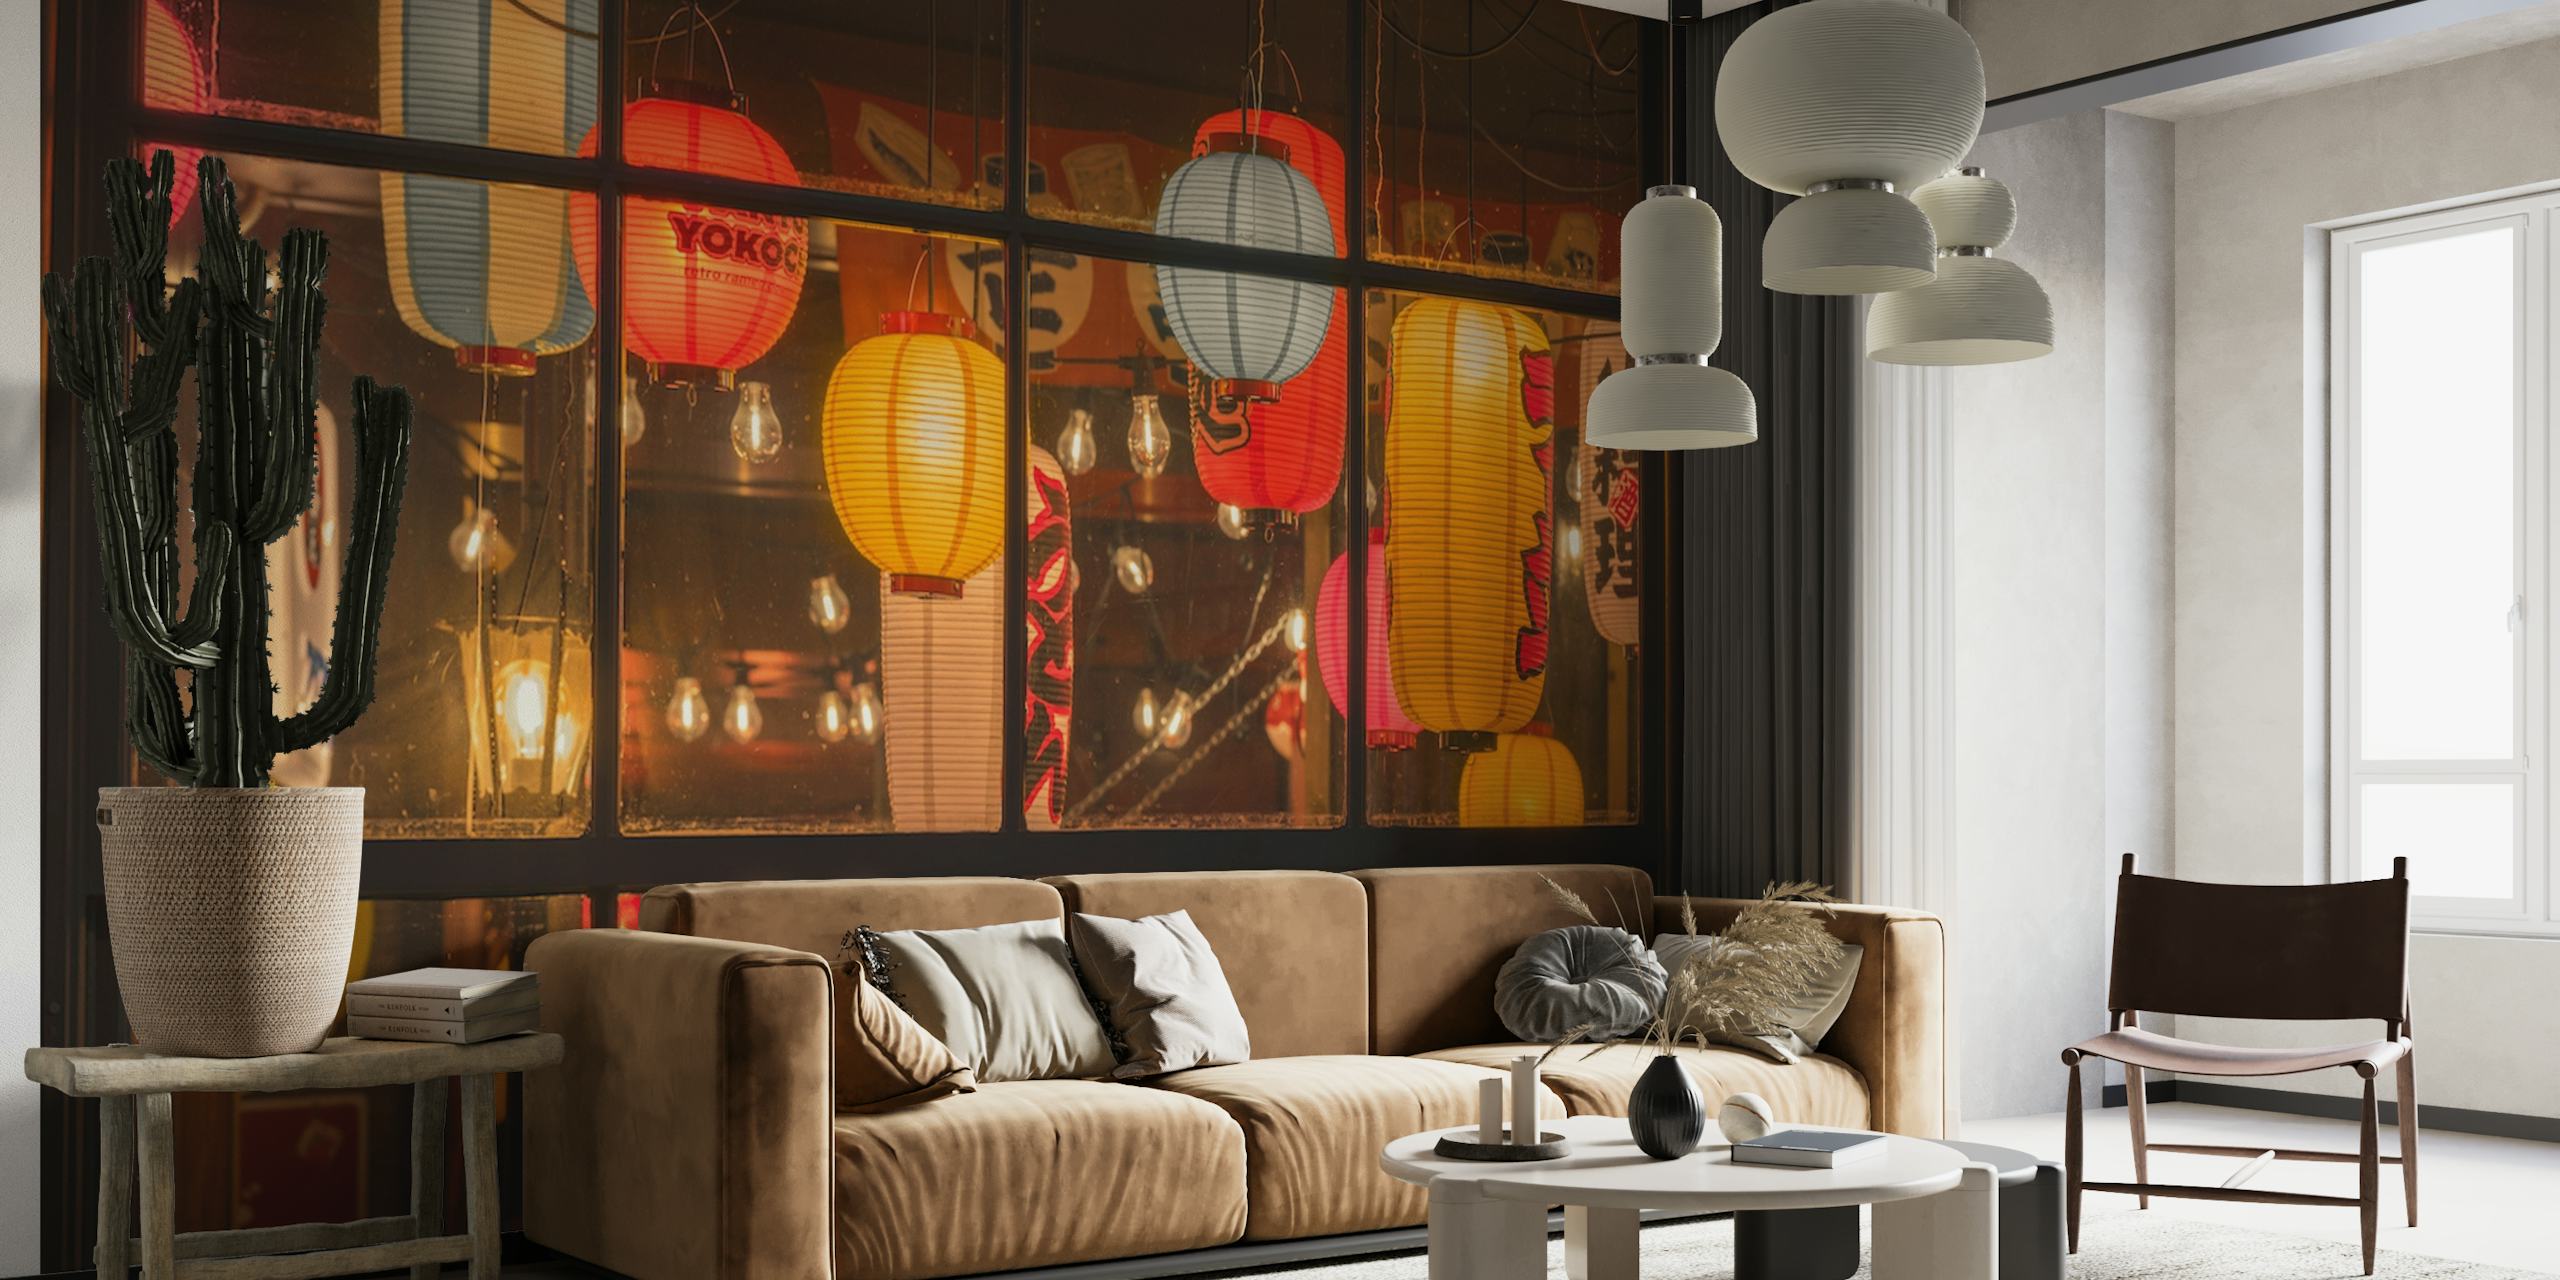 Chinese Lantern Shop wallpaper